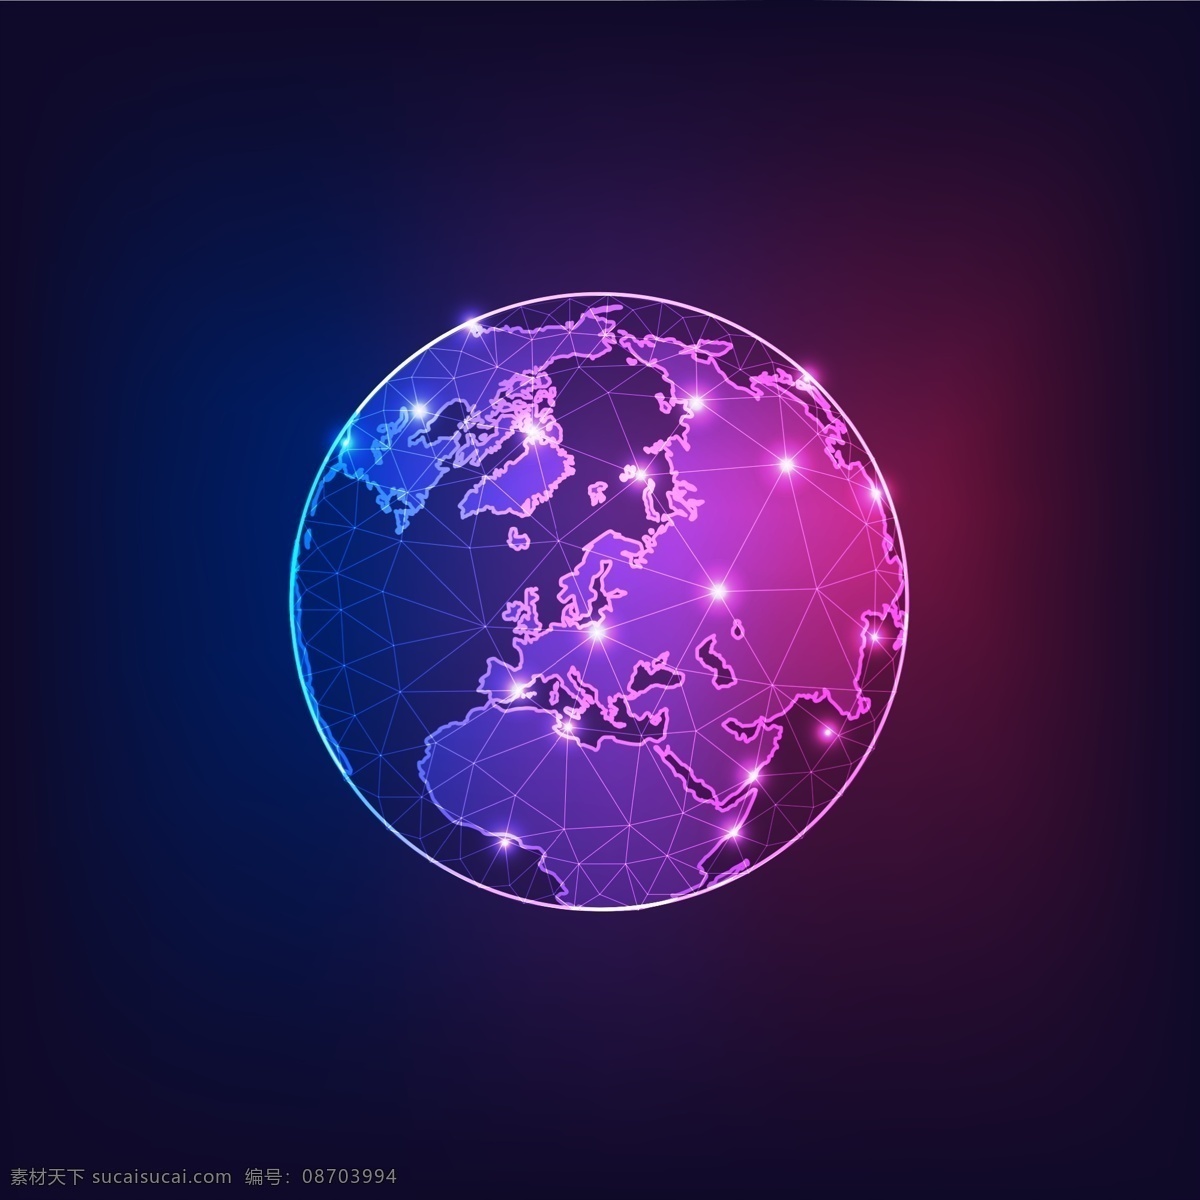 地球 模板 全球化 抽象 模版 太空 宇宙 矢量 欧洲 背景图 紫色 点线 光效 联接 连接 矢量素材 现代科技